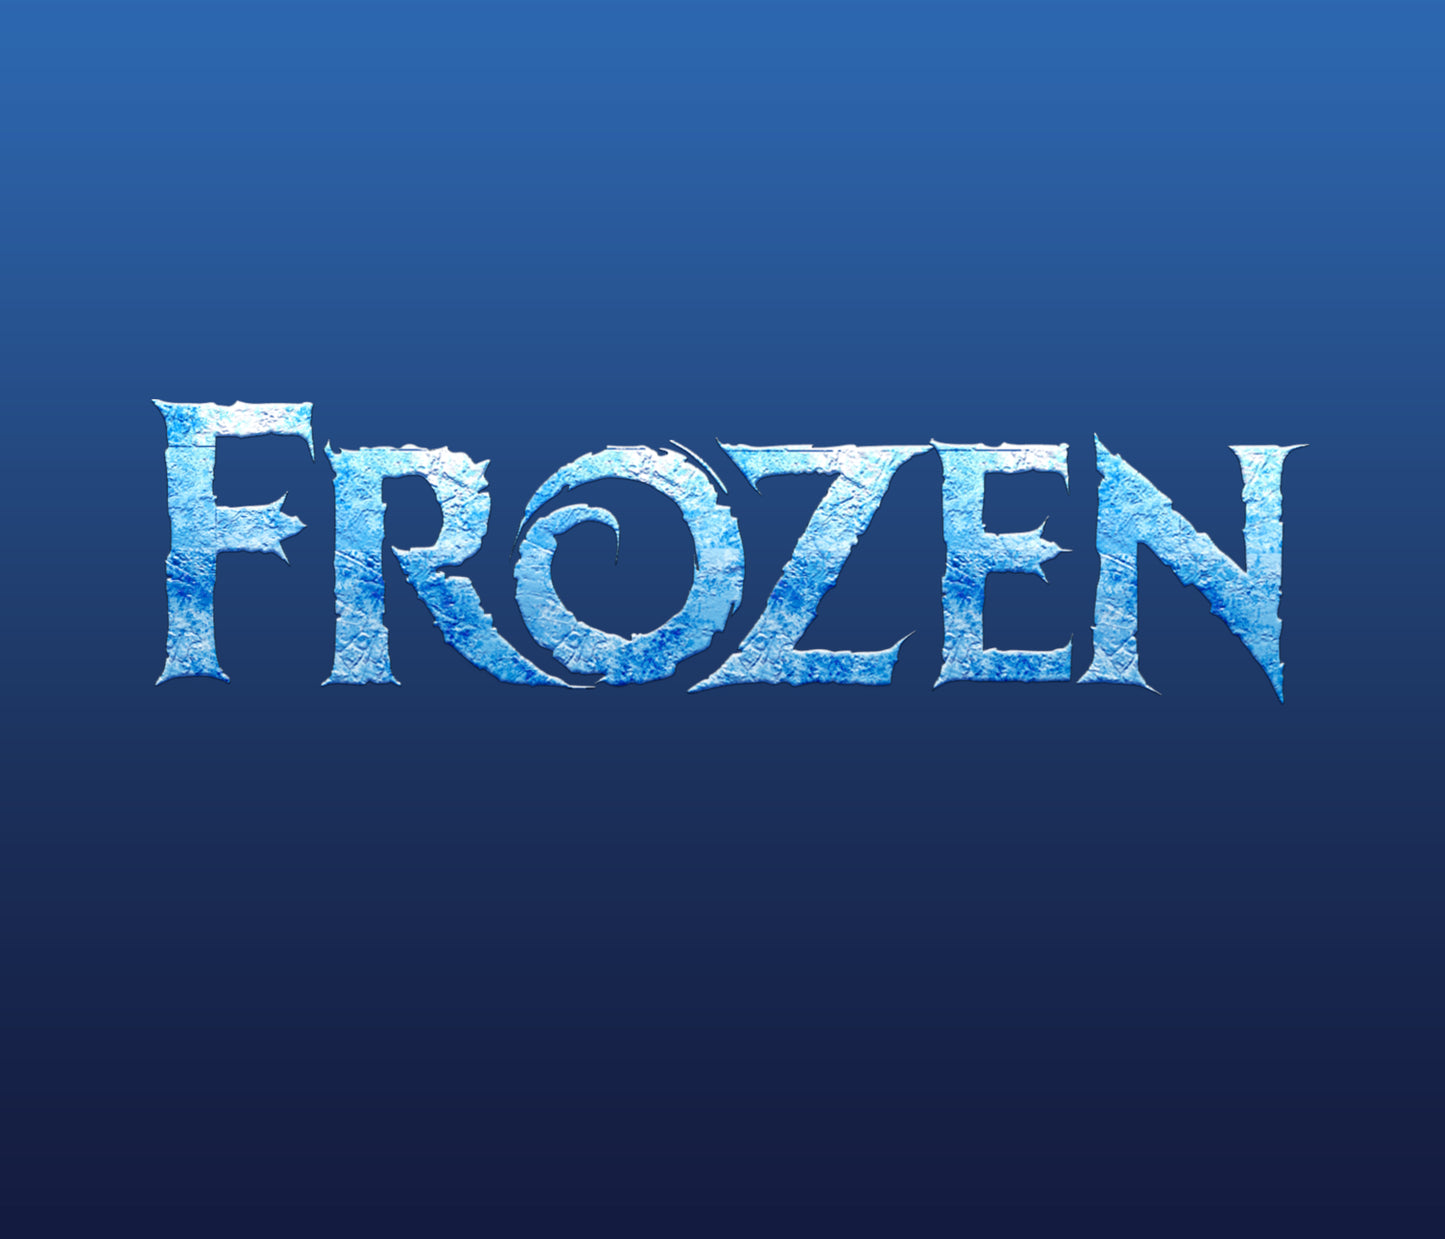 Frozen Font: A Magical Winter